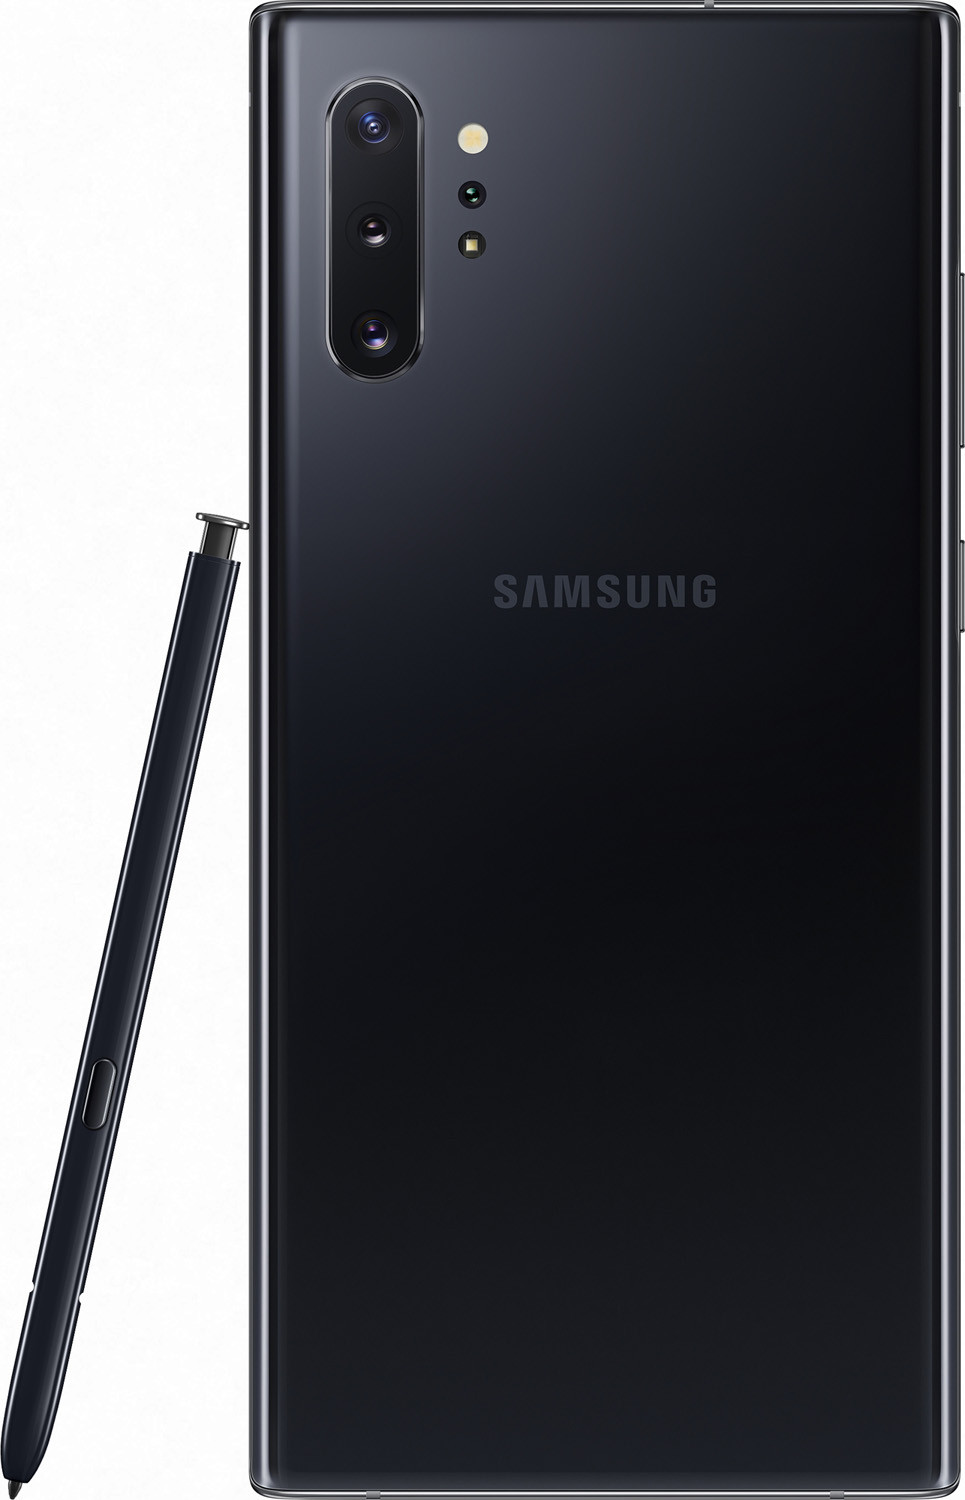 Смартфон Samsung Galaxy Note 10 Plus (N9750) 12/512GB Aura Black (Черный)